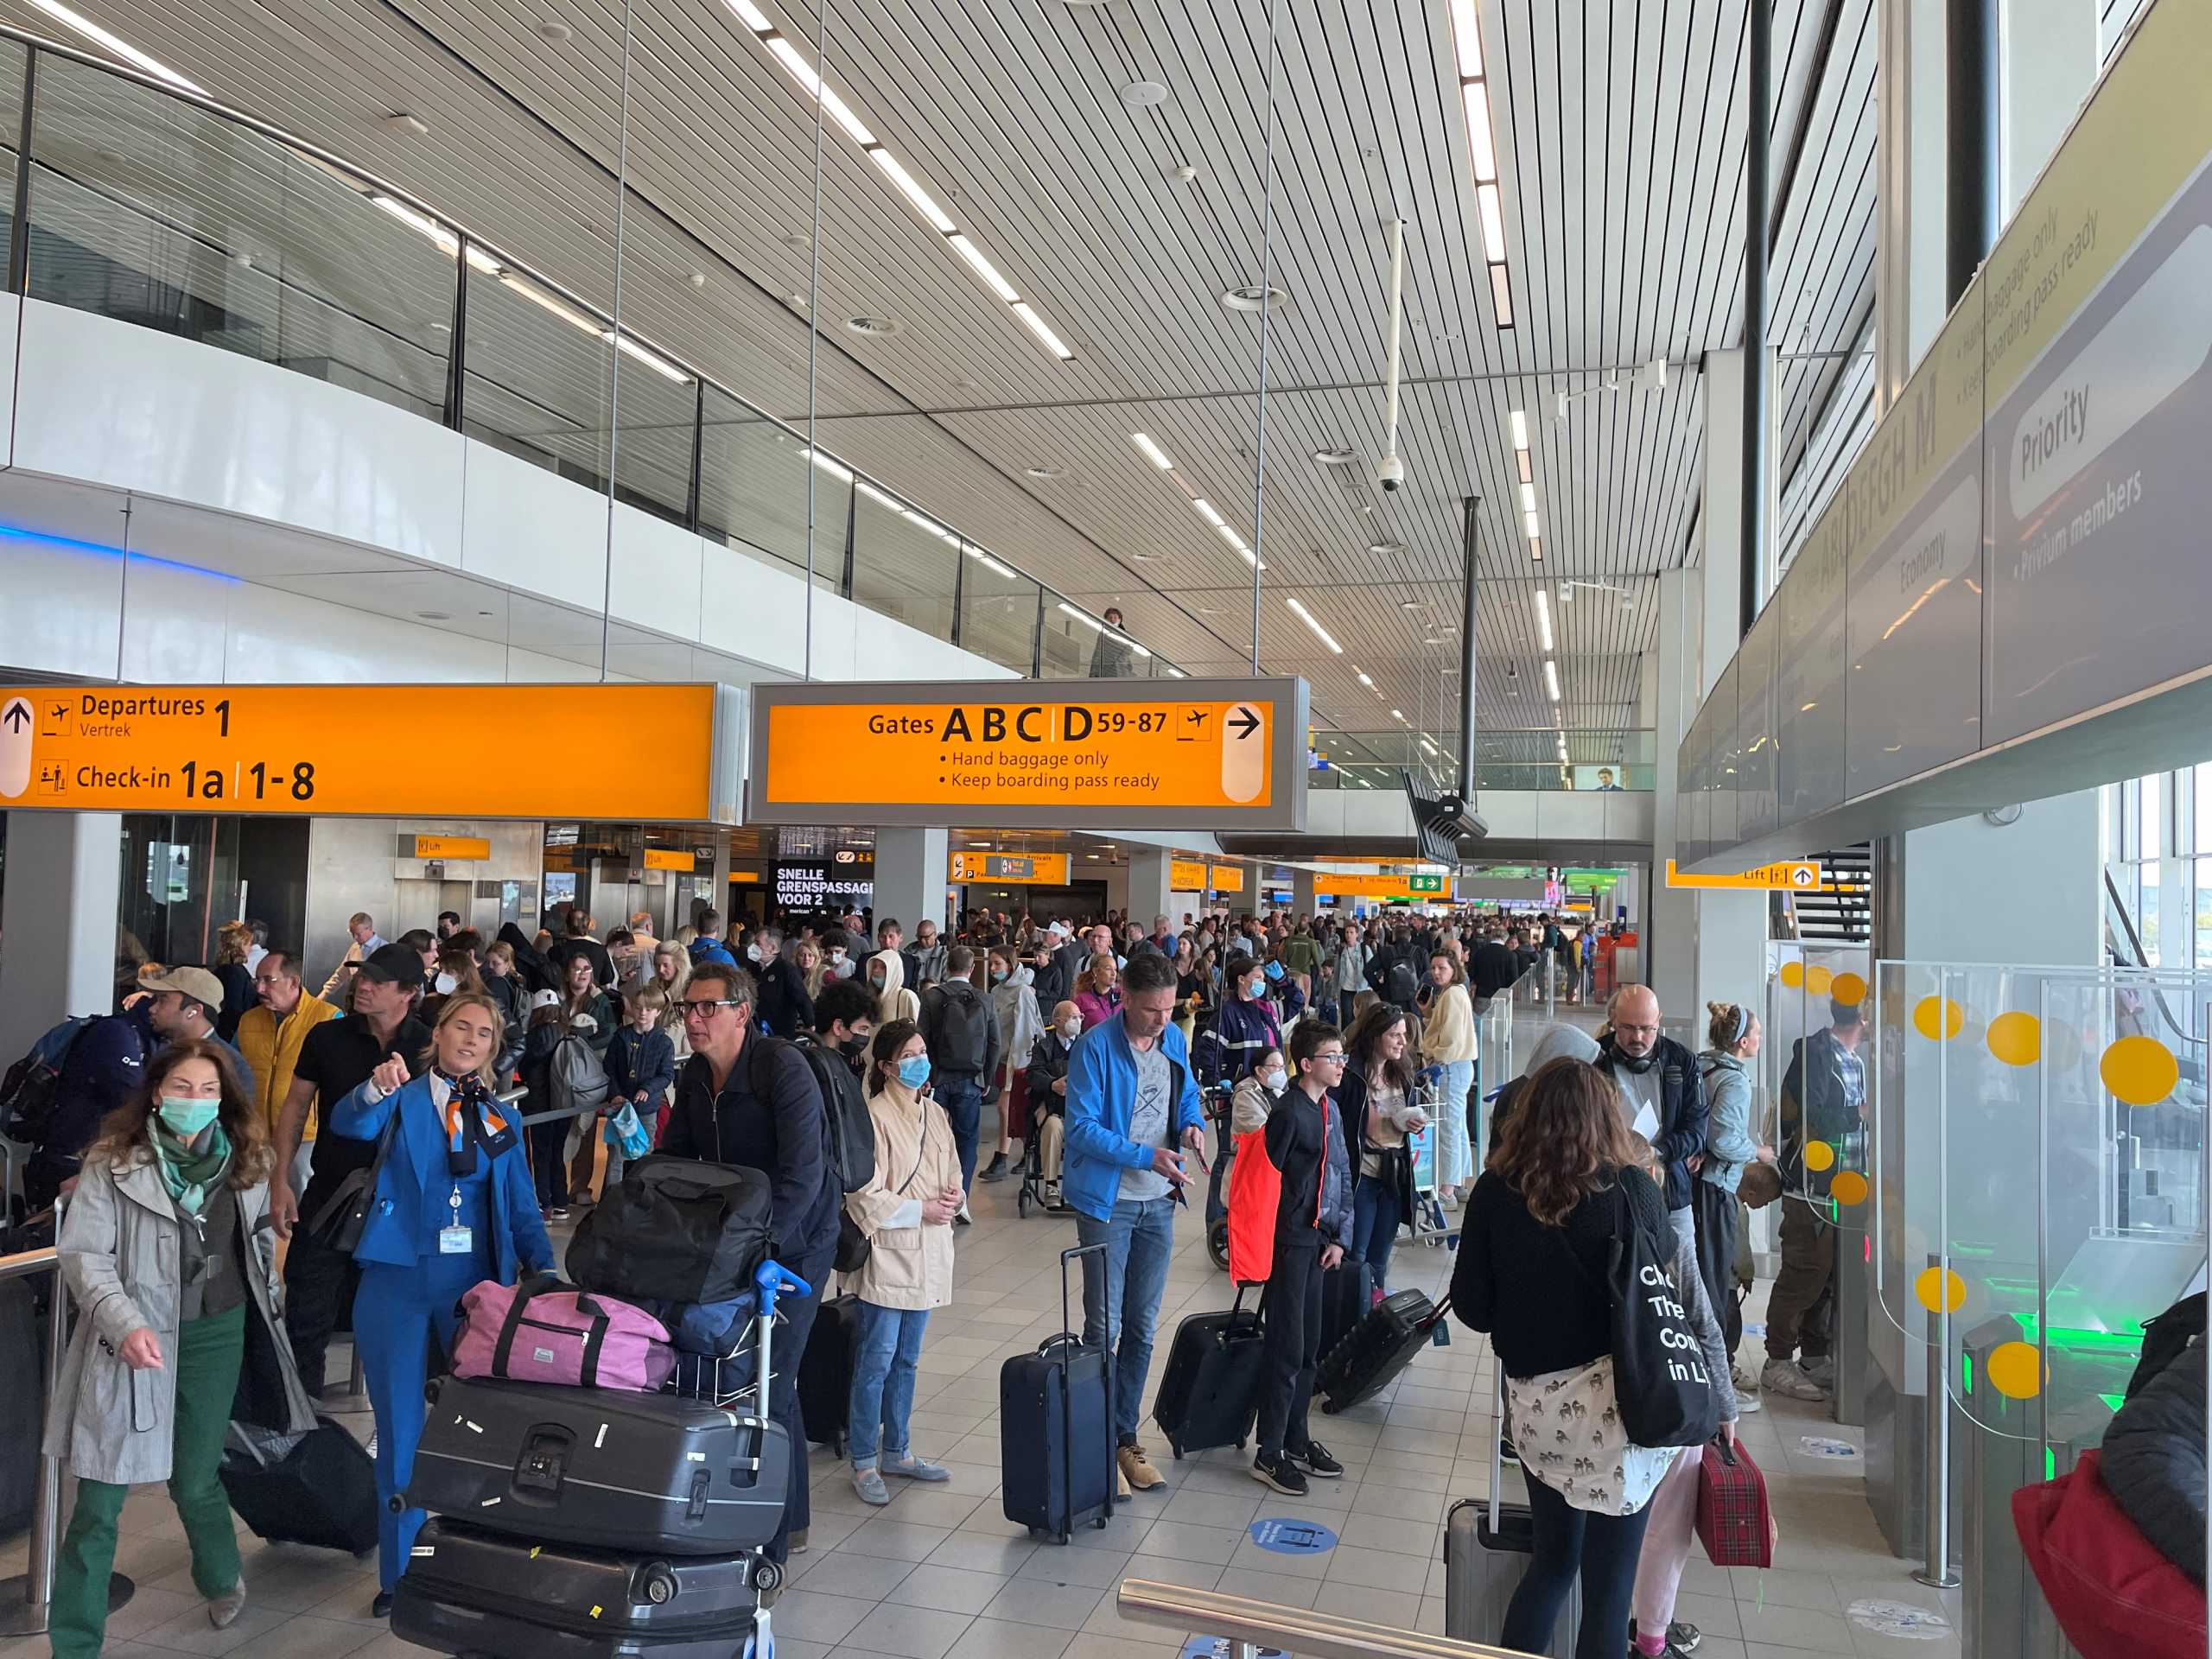 Ολλανδία: Χάος με τεράστιες ουρές ταξιδιωτών στο αεροδρόμιο Schiphol λόγω απεργίας του προσωπικού εδάφους